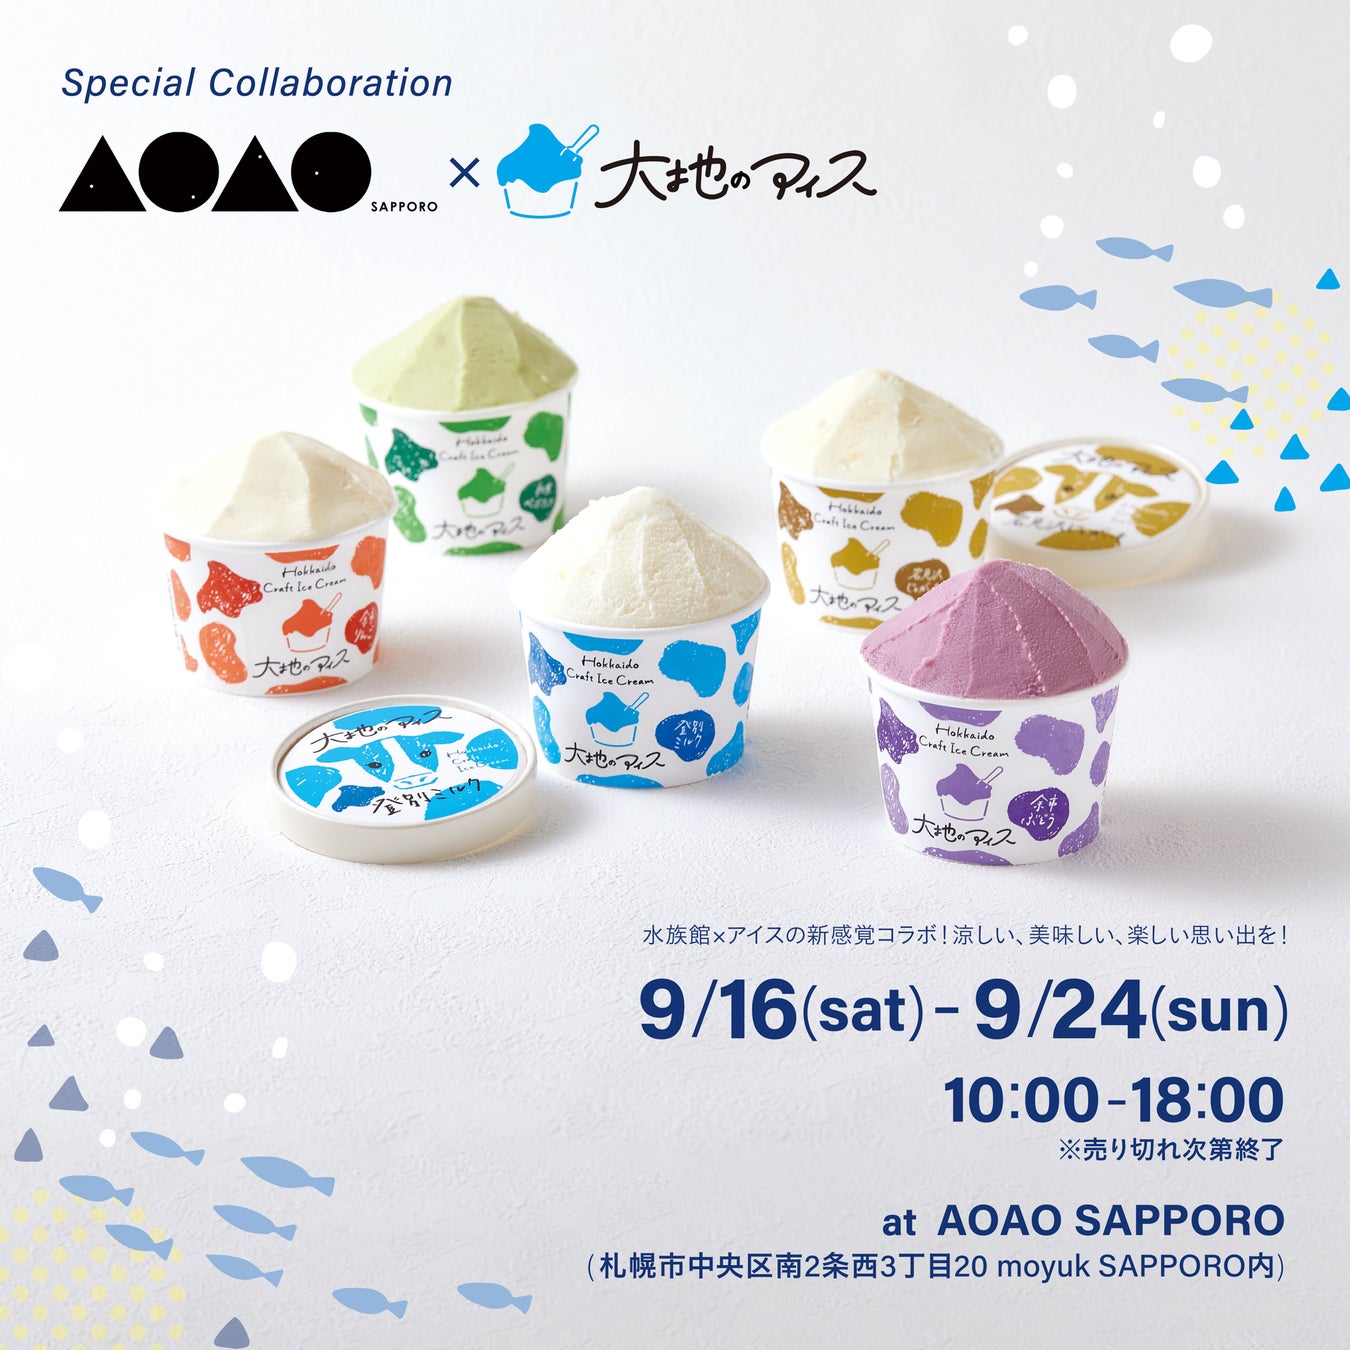 AOAO SAPPOROに大地のアイスが期間限定で出店 新作フレーバーも2種類デビュー